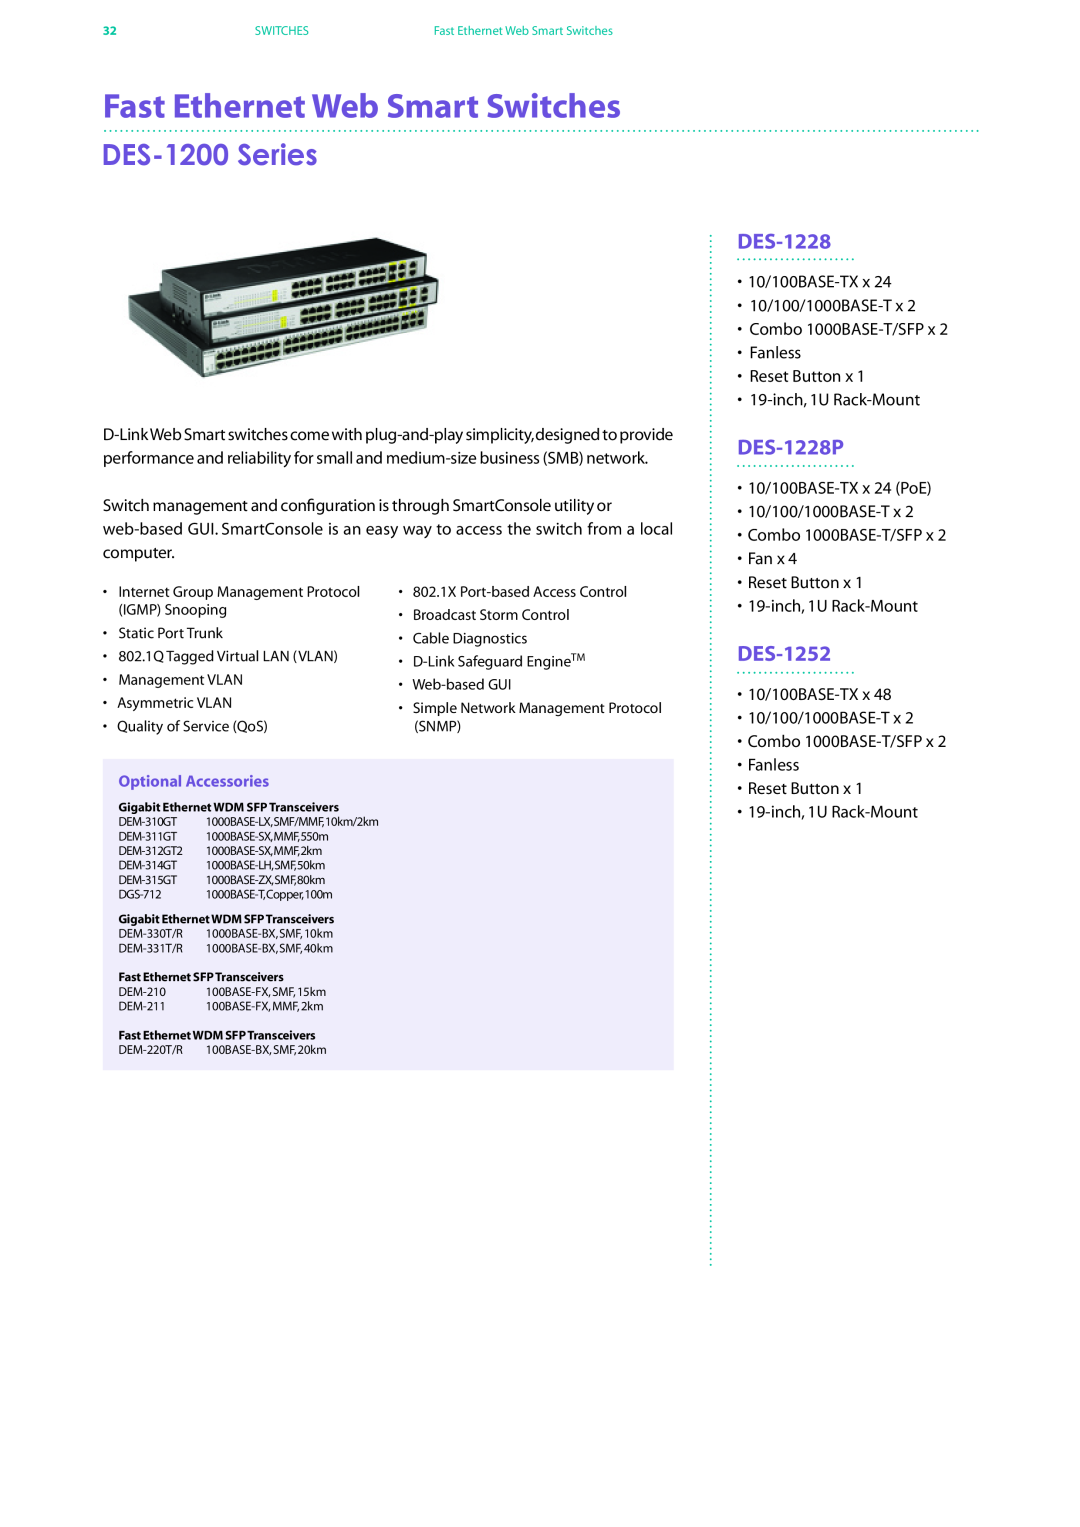 D-Link DES-7200 manual DES-1200 Series, DES-1228P, DES-1252, Fast Ethernet Web Smart Switches 